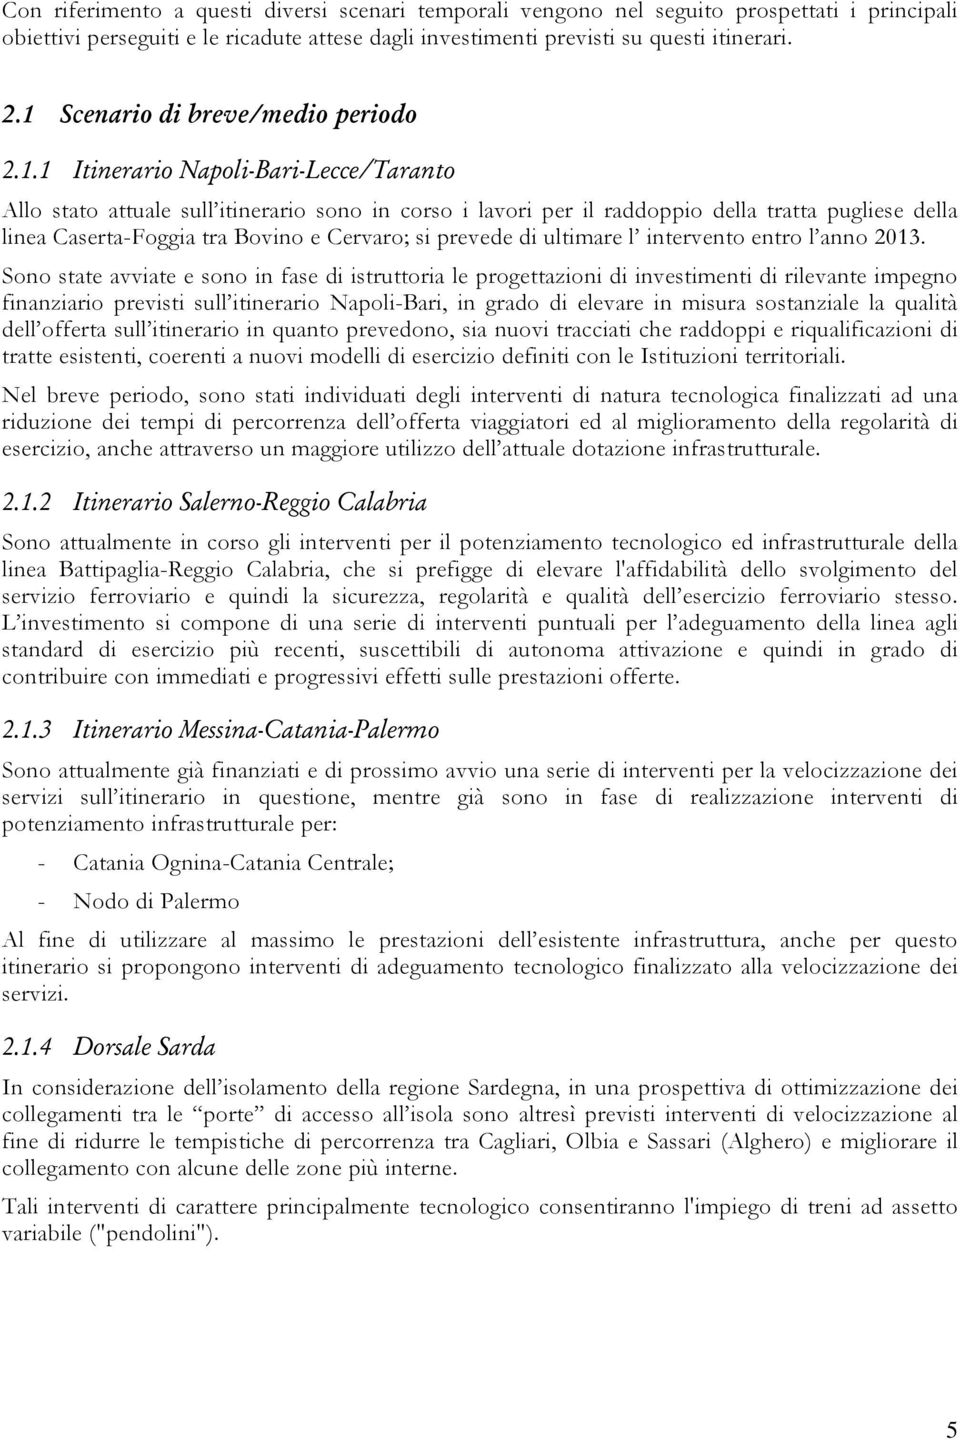 Caserta-Foggia tra Bovino e Cervaro; si prevede di ultimare l intervento entro l anno 2013.